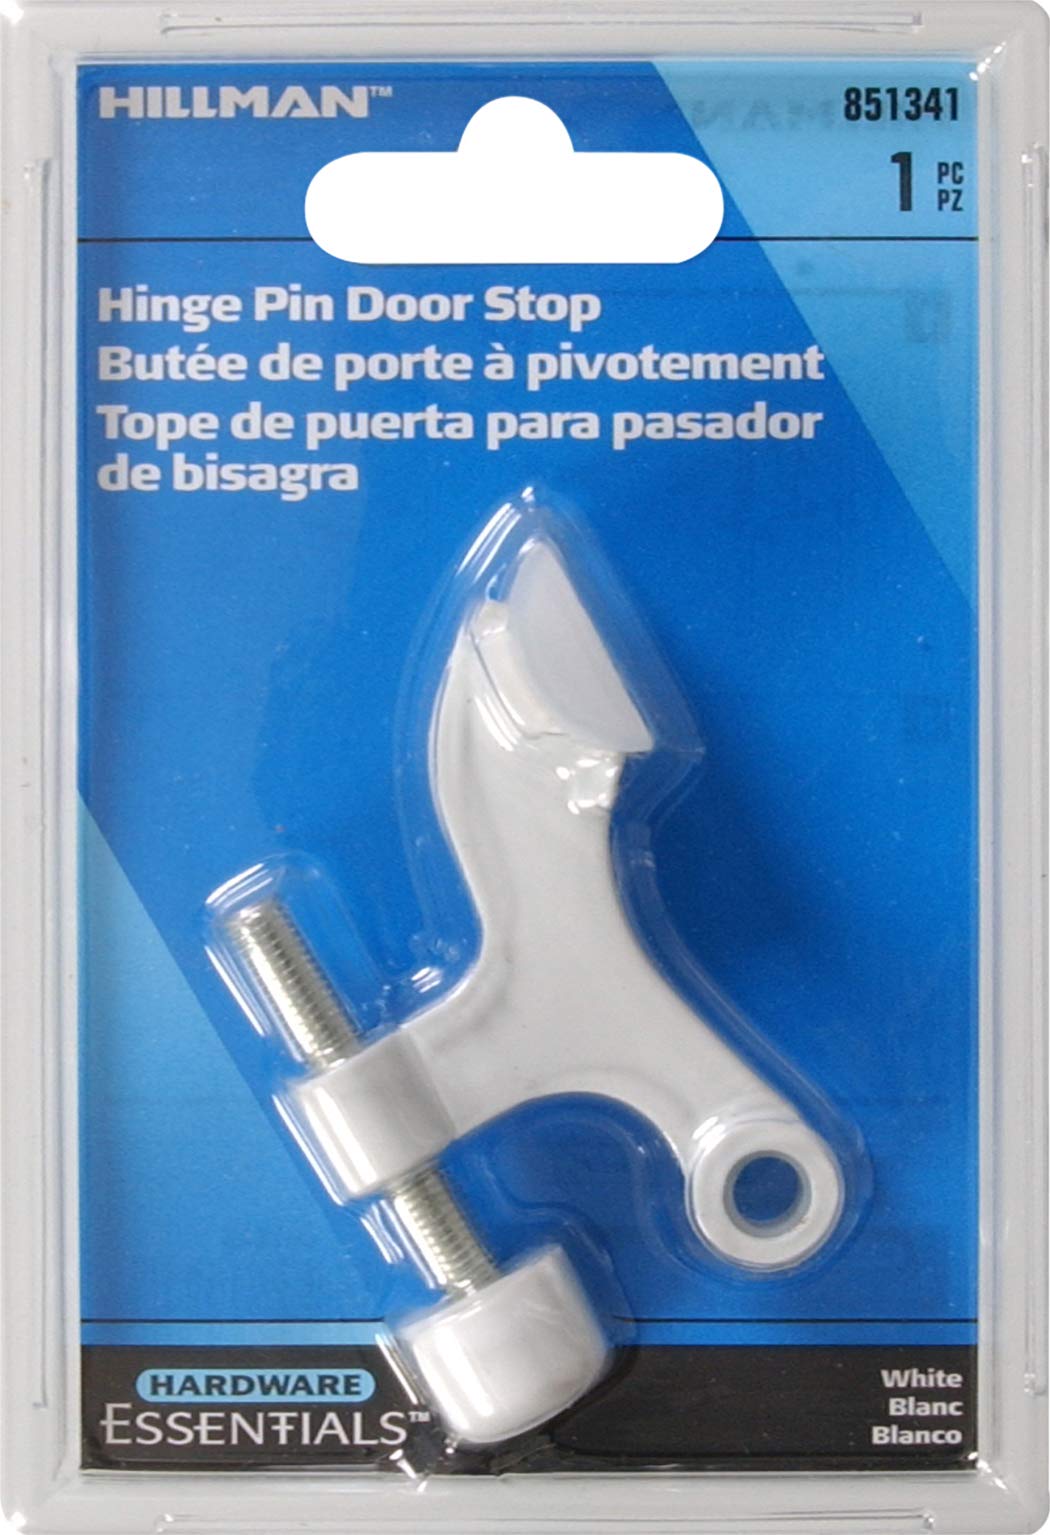 Hardware Essentials 851341 Hinge Pin Door Stops Solid and Hollow Doors White